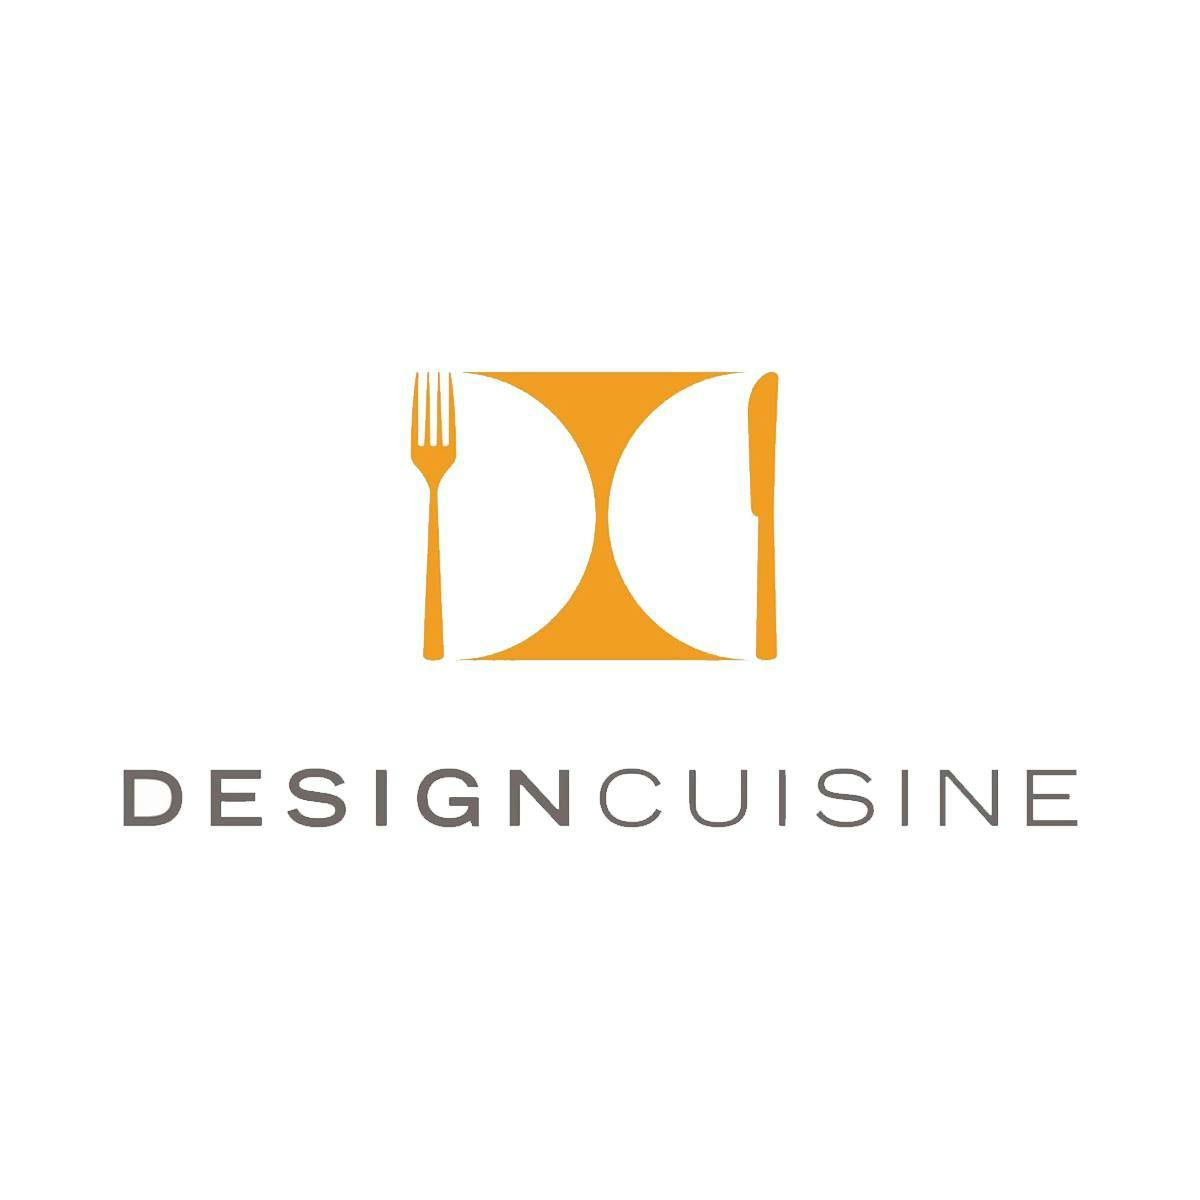 Design Cuisine